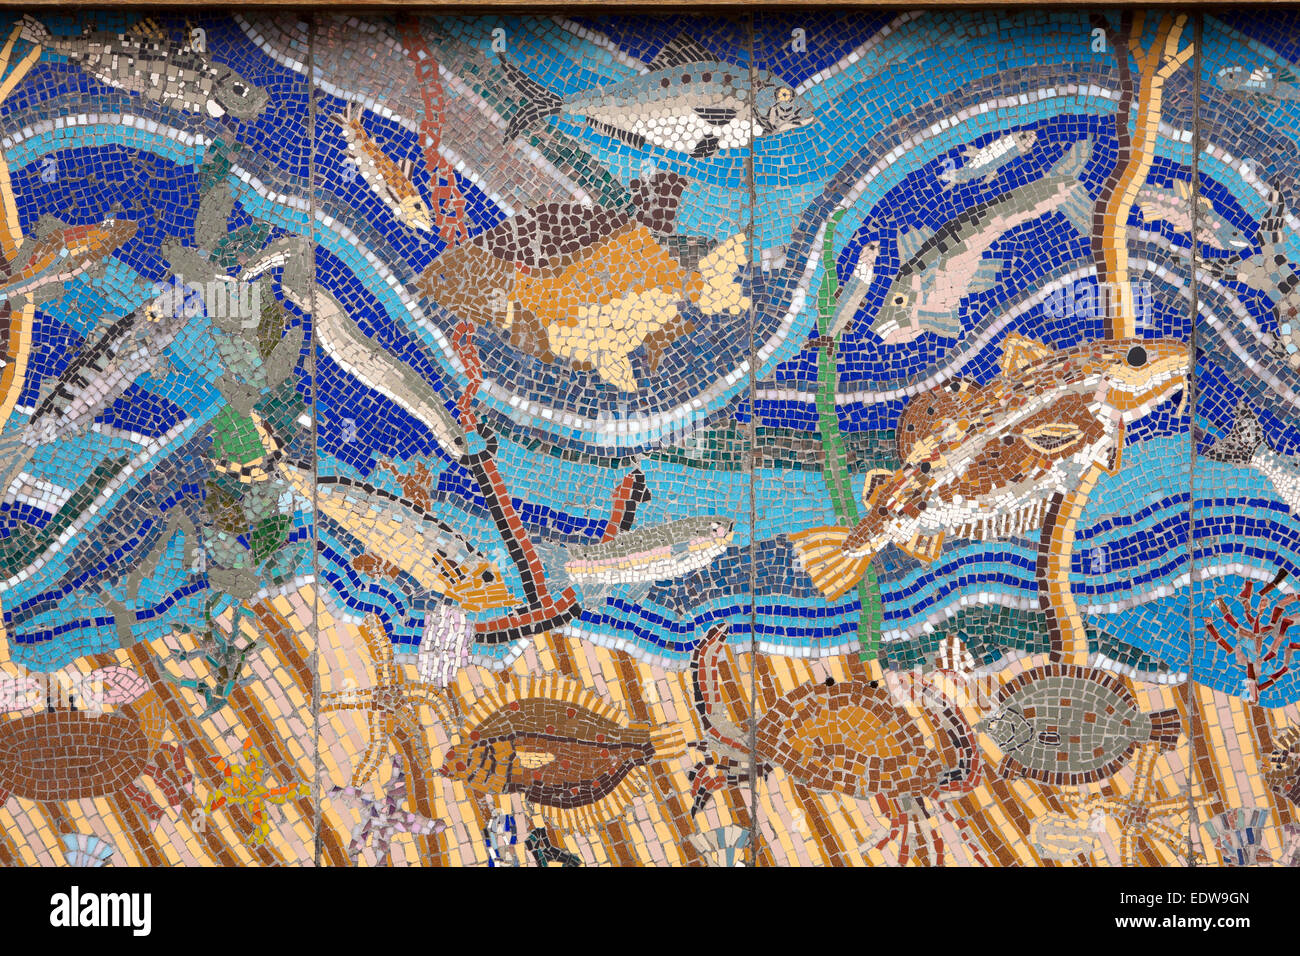 UK, England, Yorkshire, Whitby, Fish Quay, marine life decorative mosaic Stock Photo